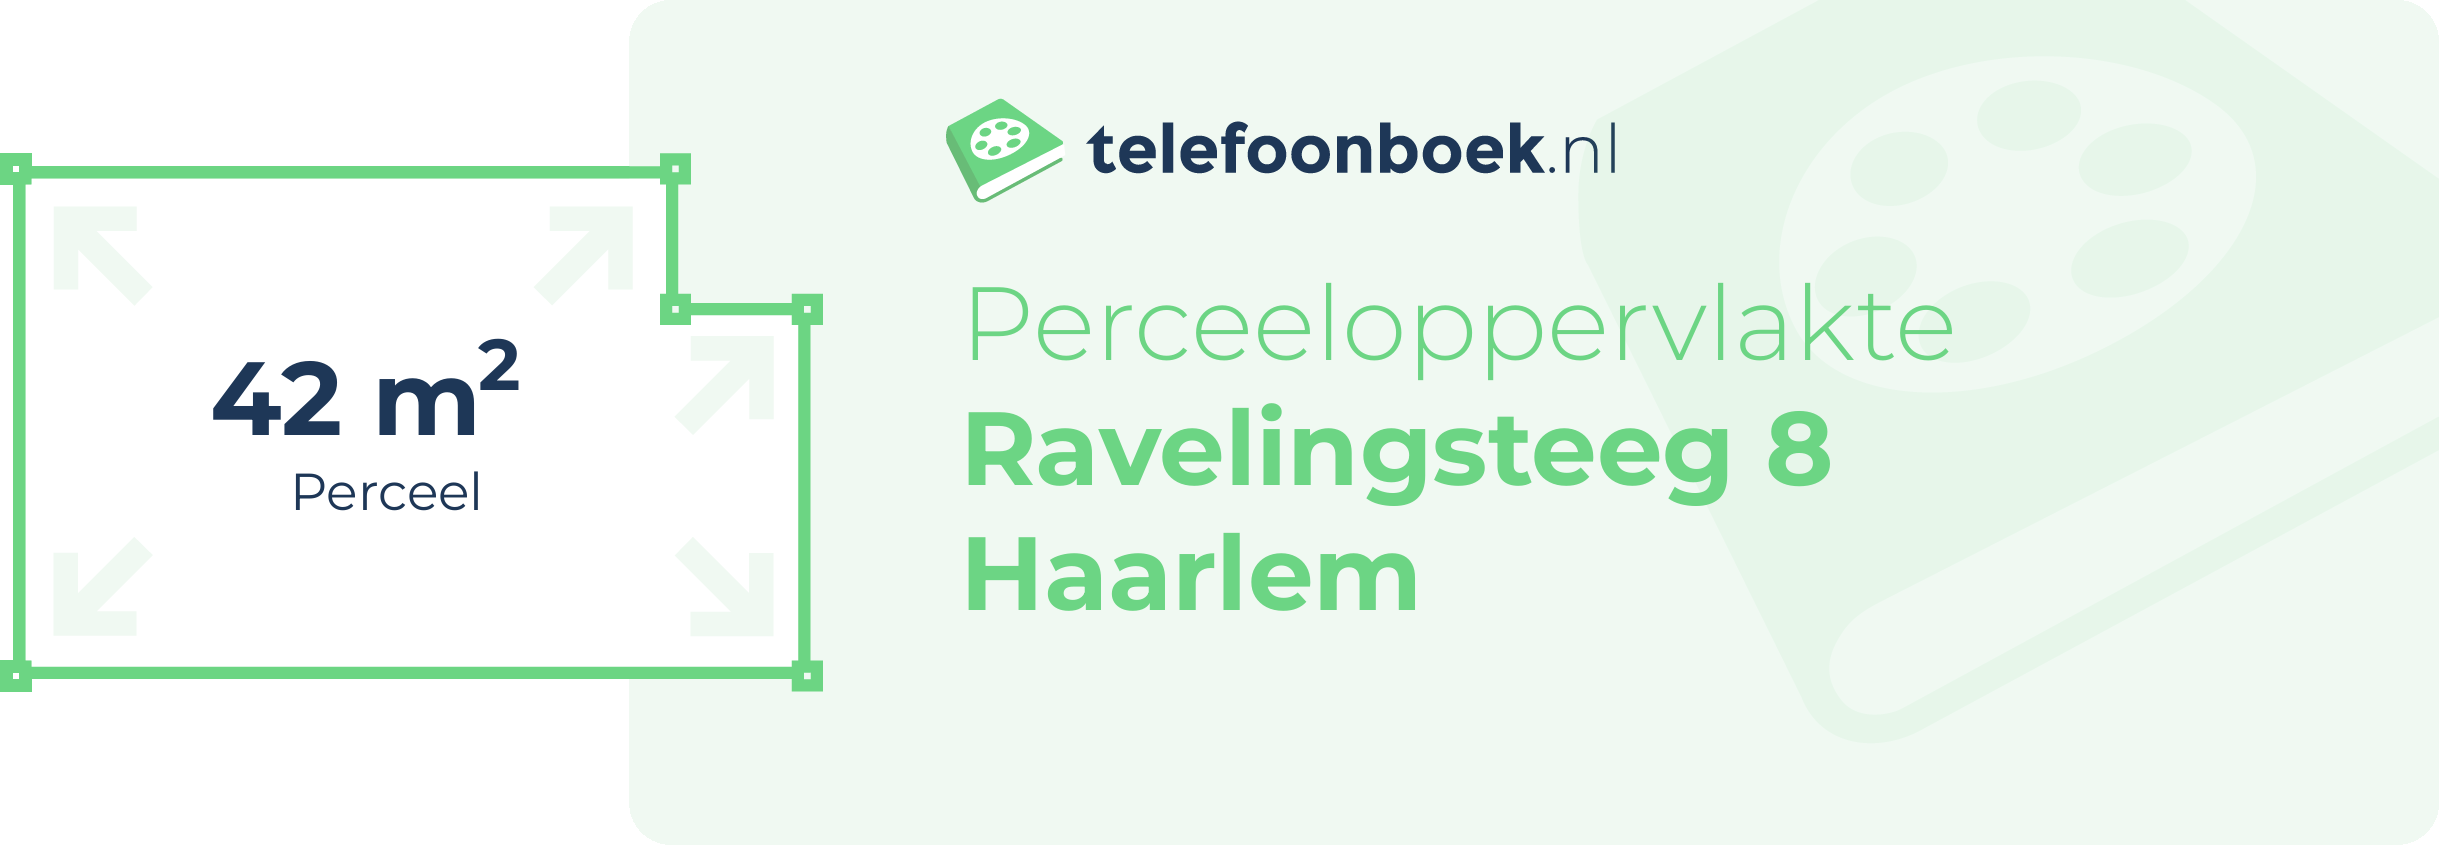 Perceeloppervlakte Ravelingsteeg 8 Haarlem